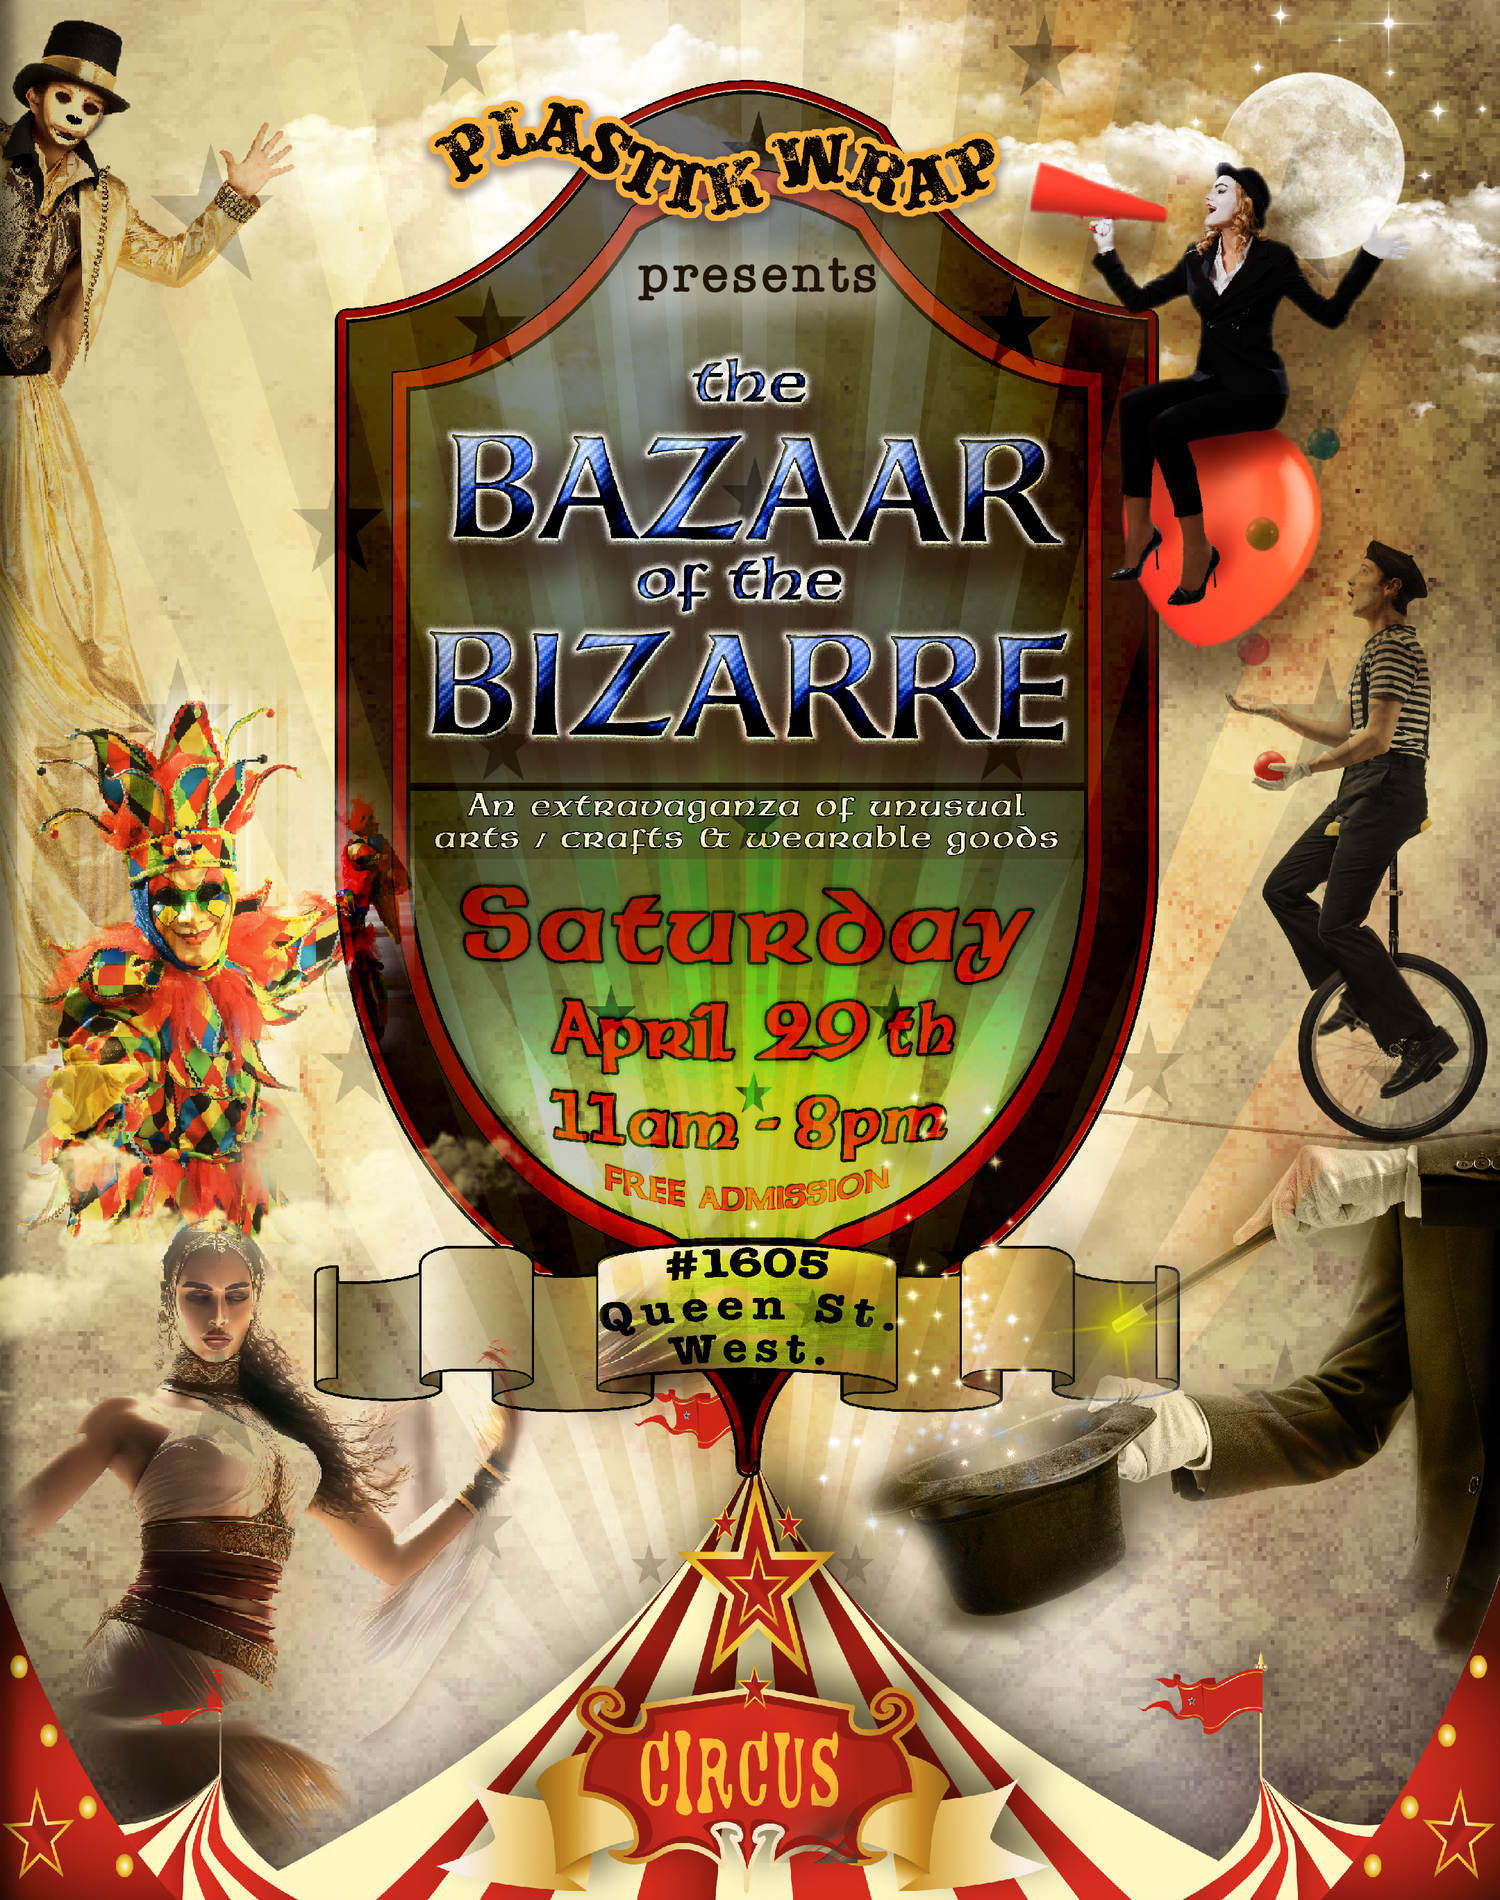 The Bazaar of the Bizarre